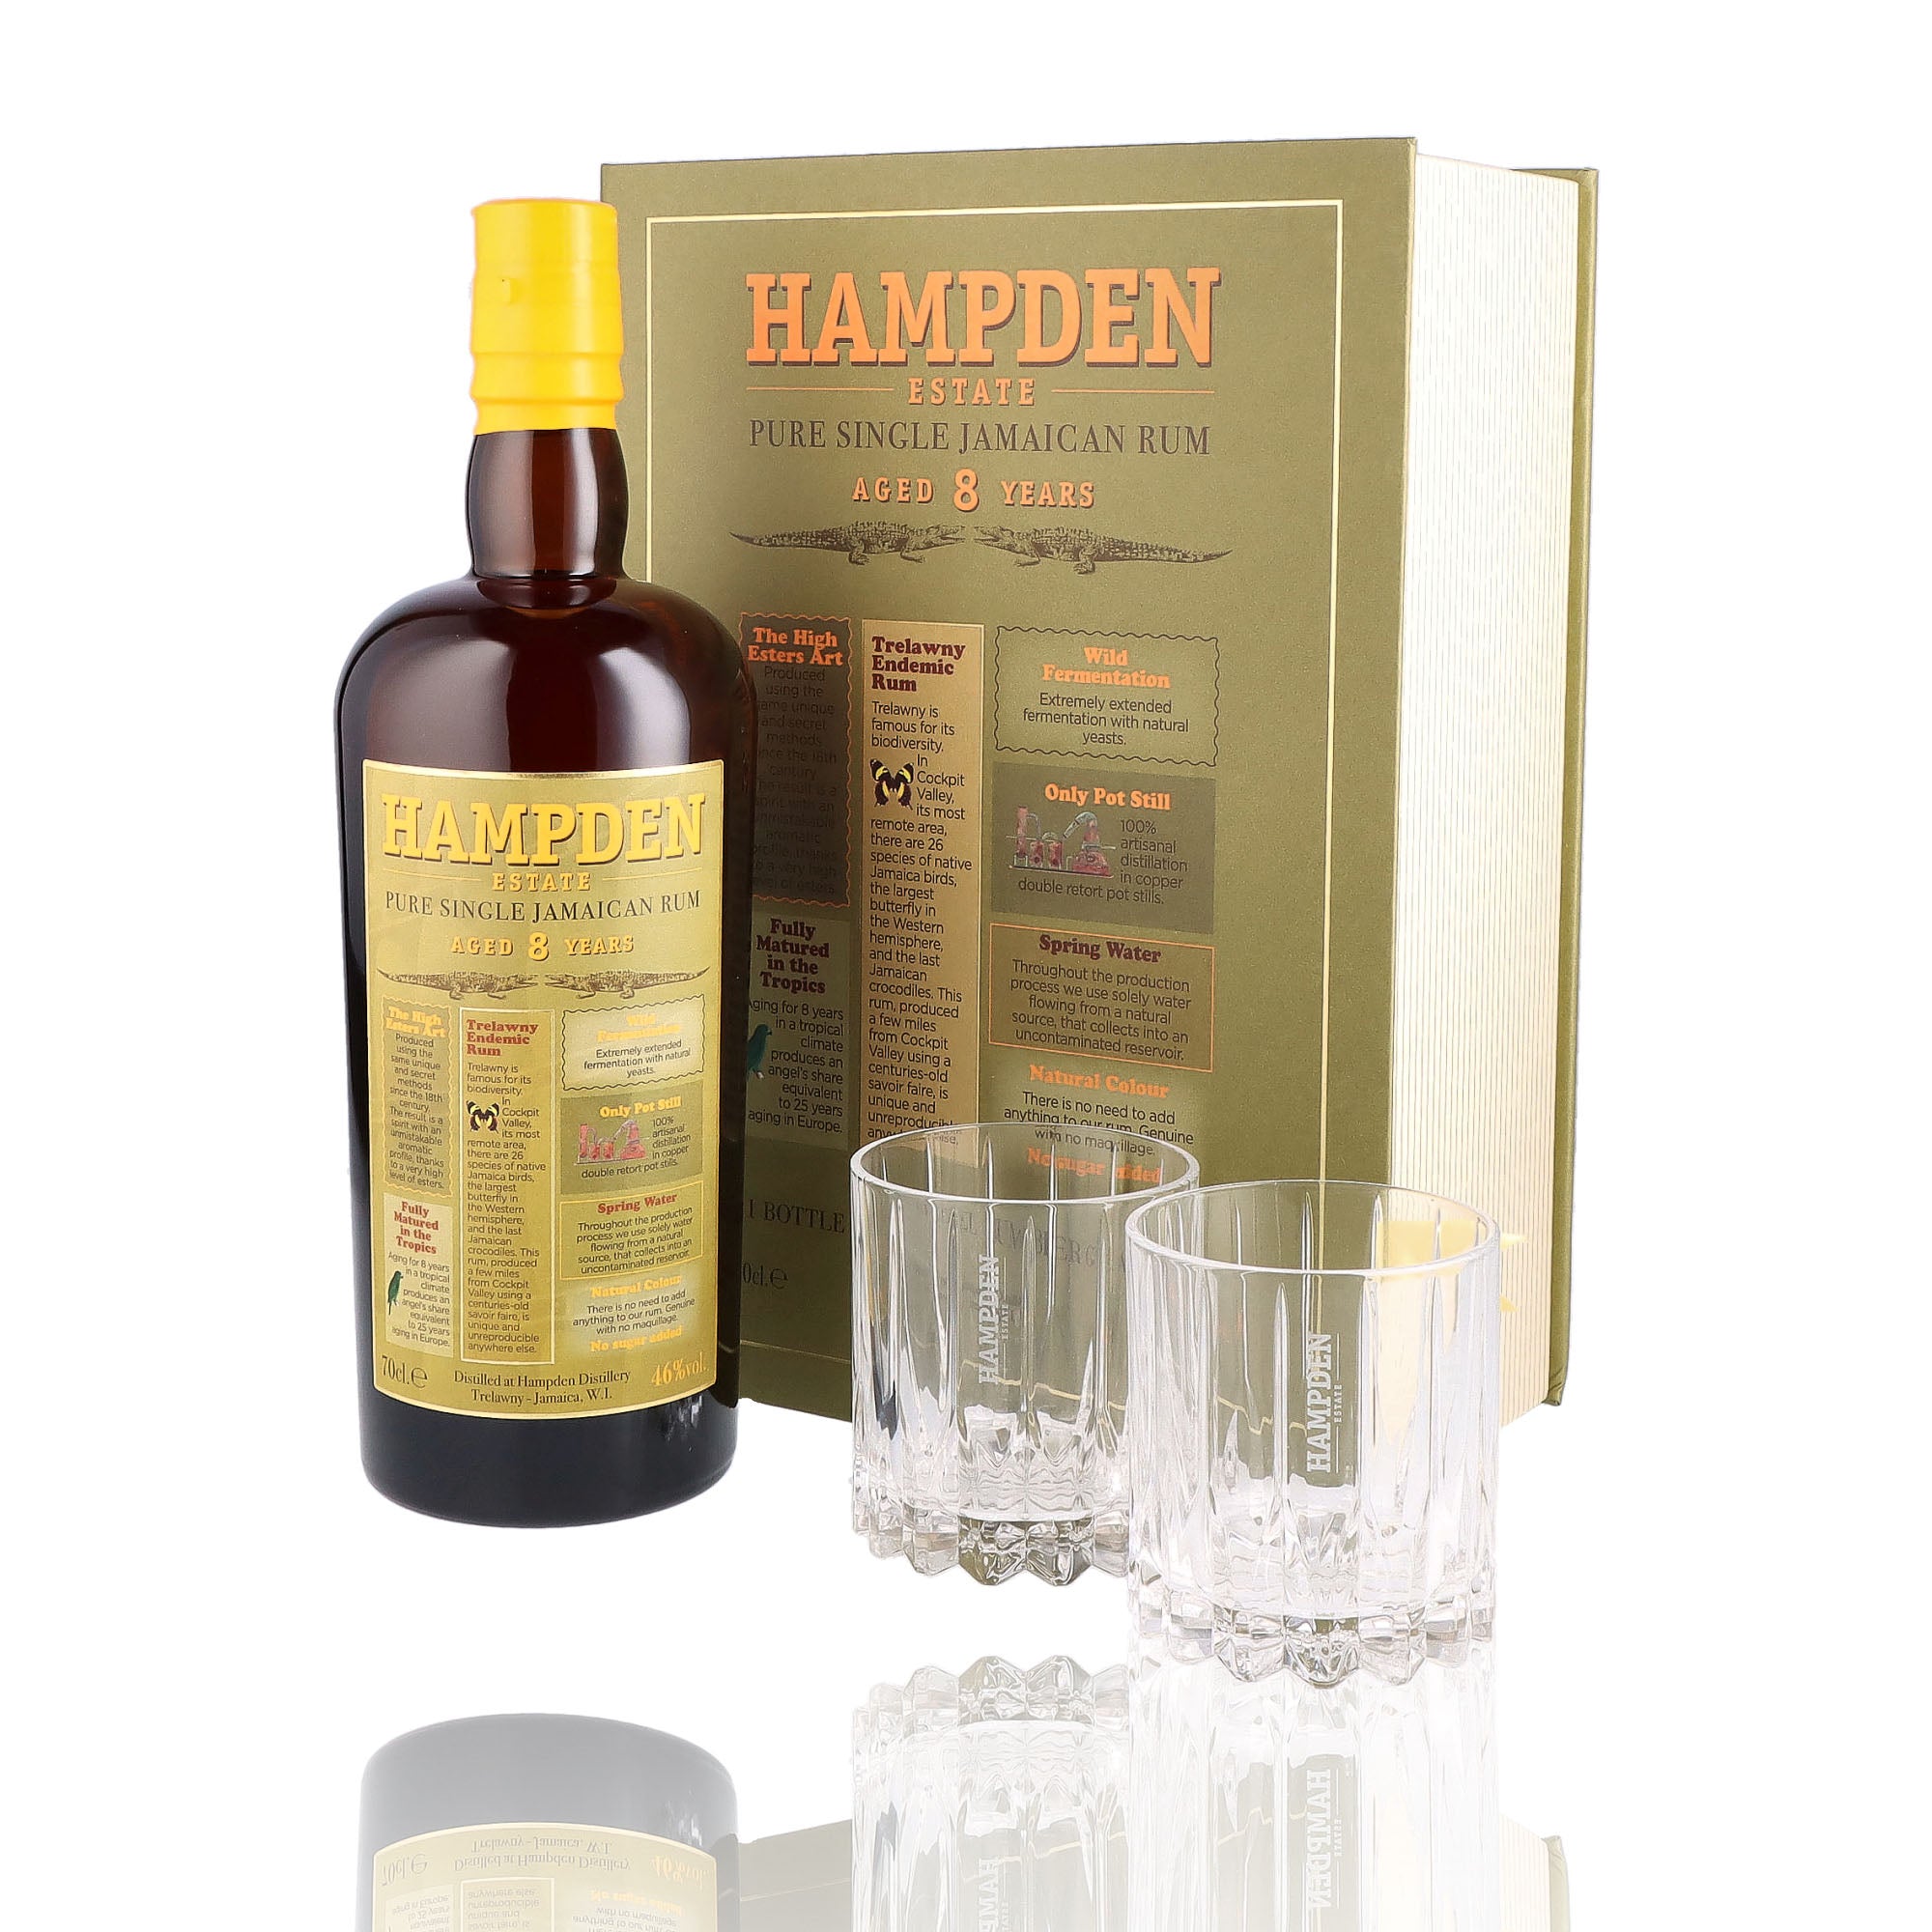 Un coffret de rhum vieux, de la marque Hampden, 8 ans d'âge et ses 2 verres.